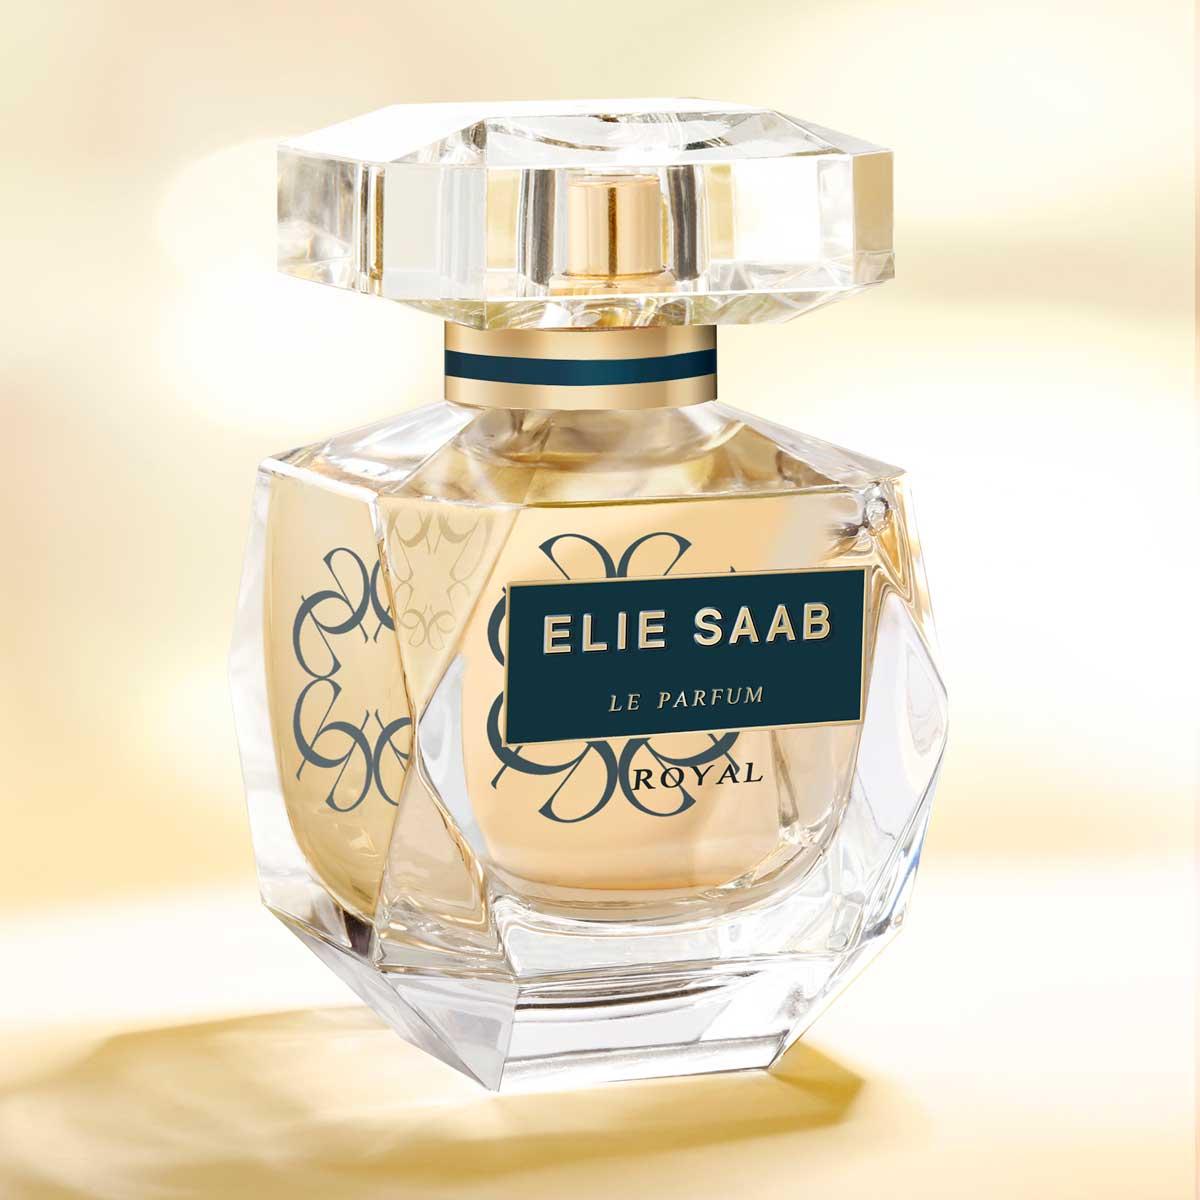 Elie Saab Le Parfum Royal Eau de Parfum 50ml | FEELUNIQUE